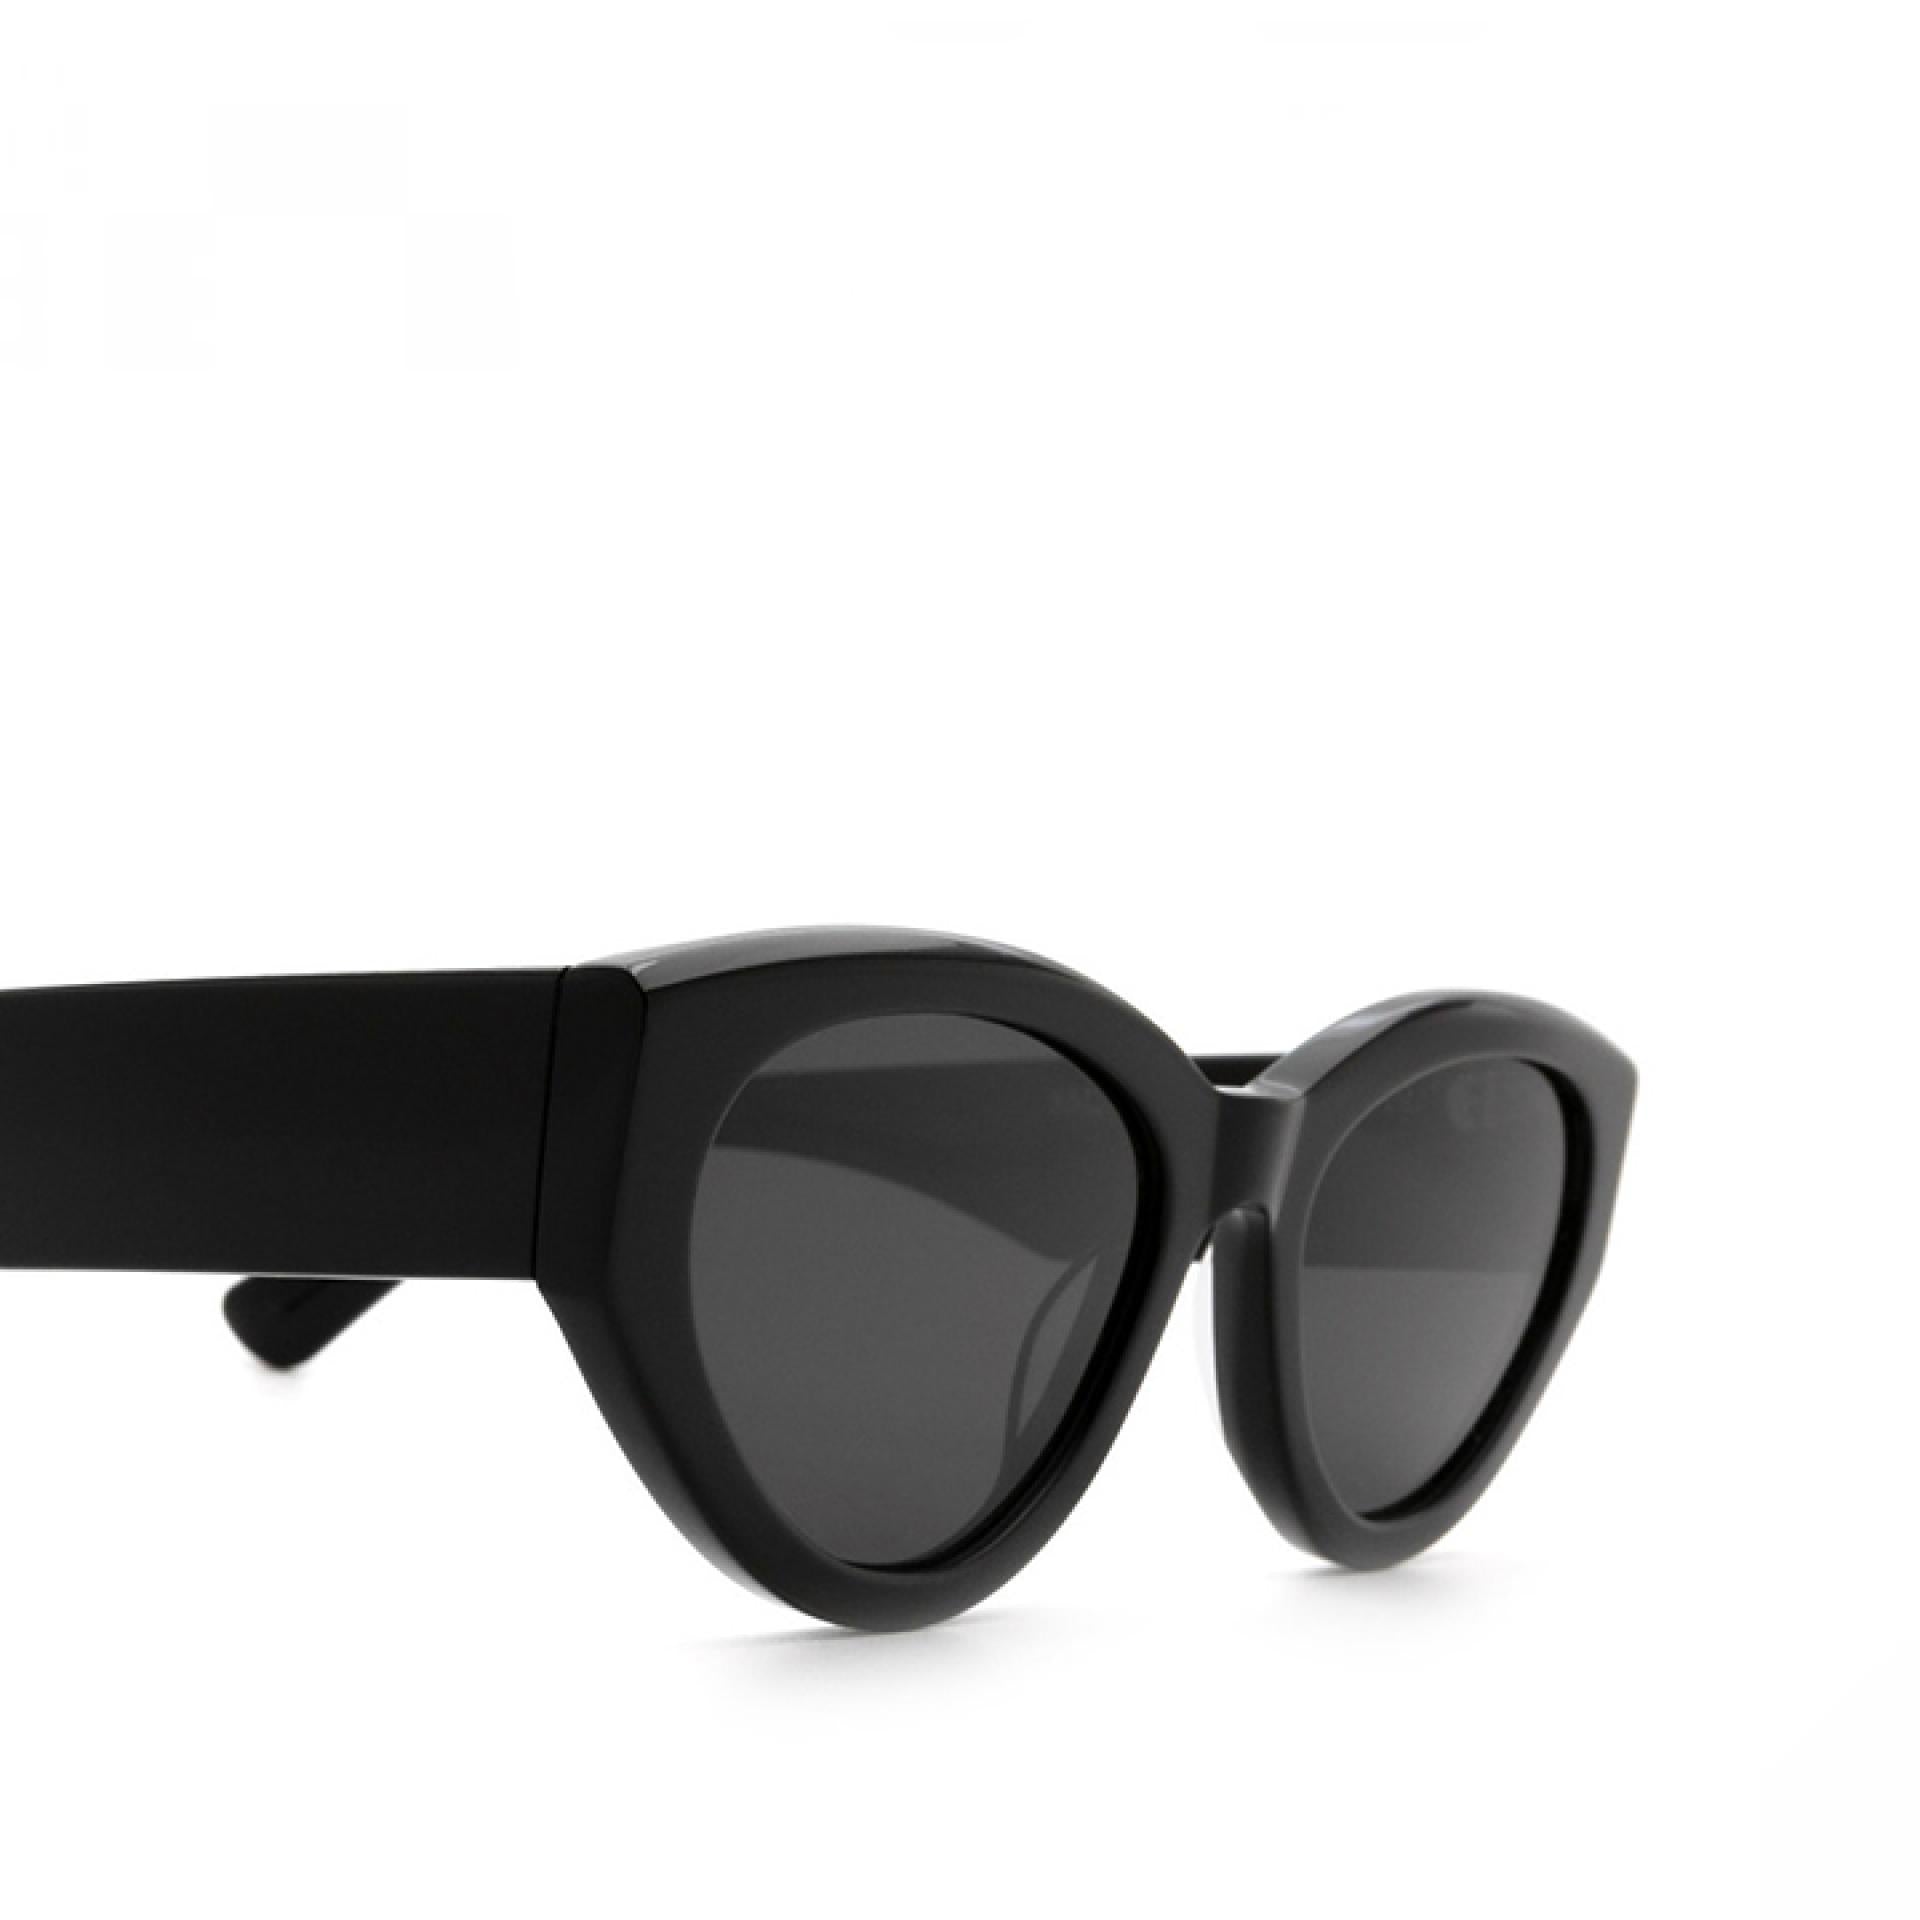 Chimi Sonnenbrille Modell 06 Black